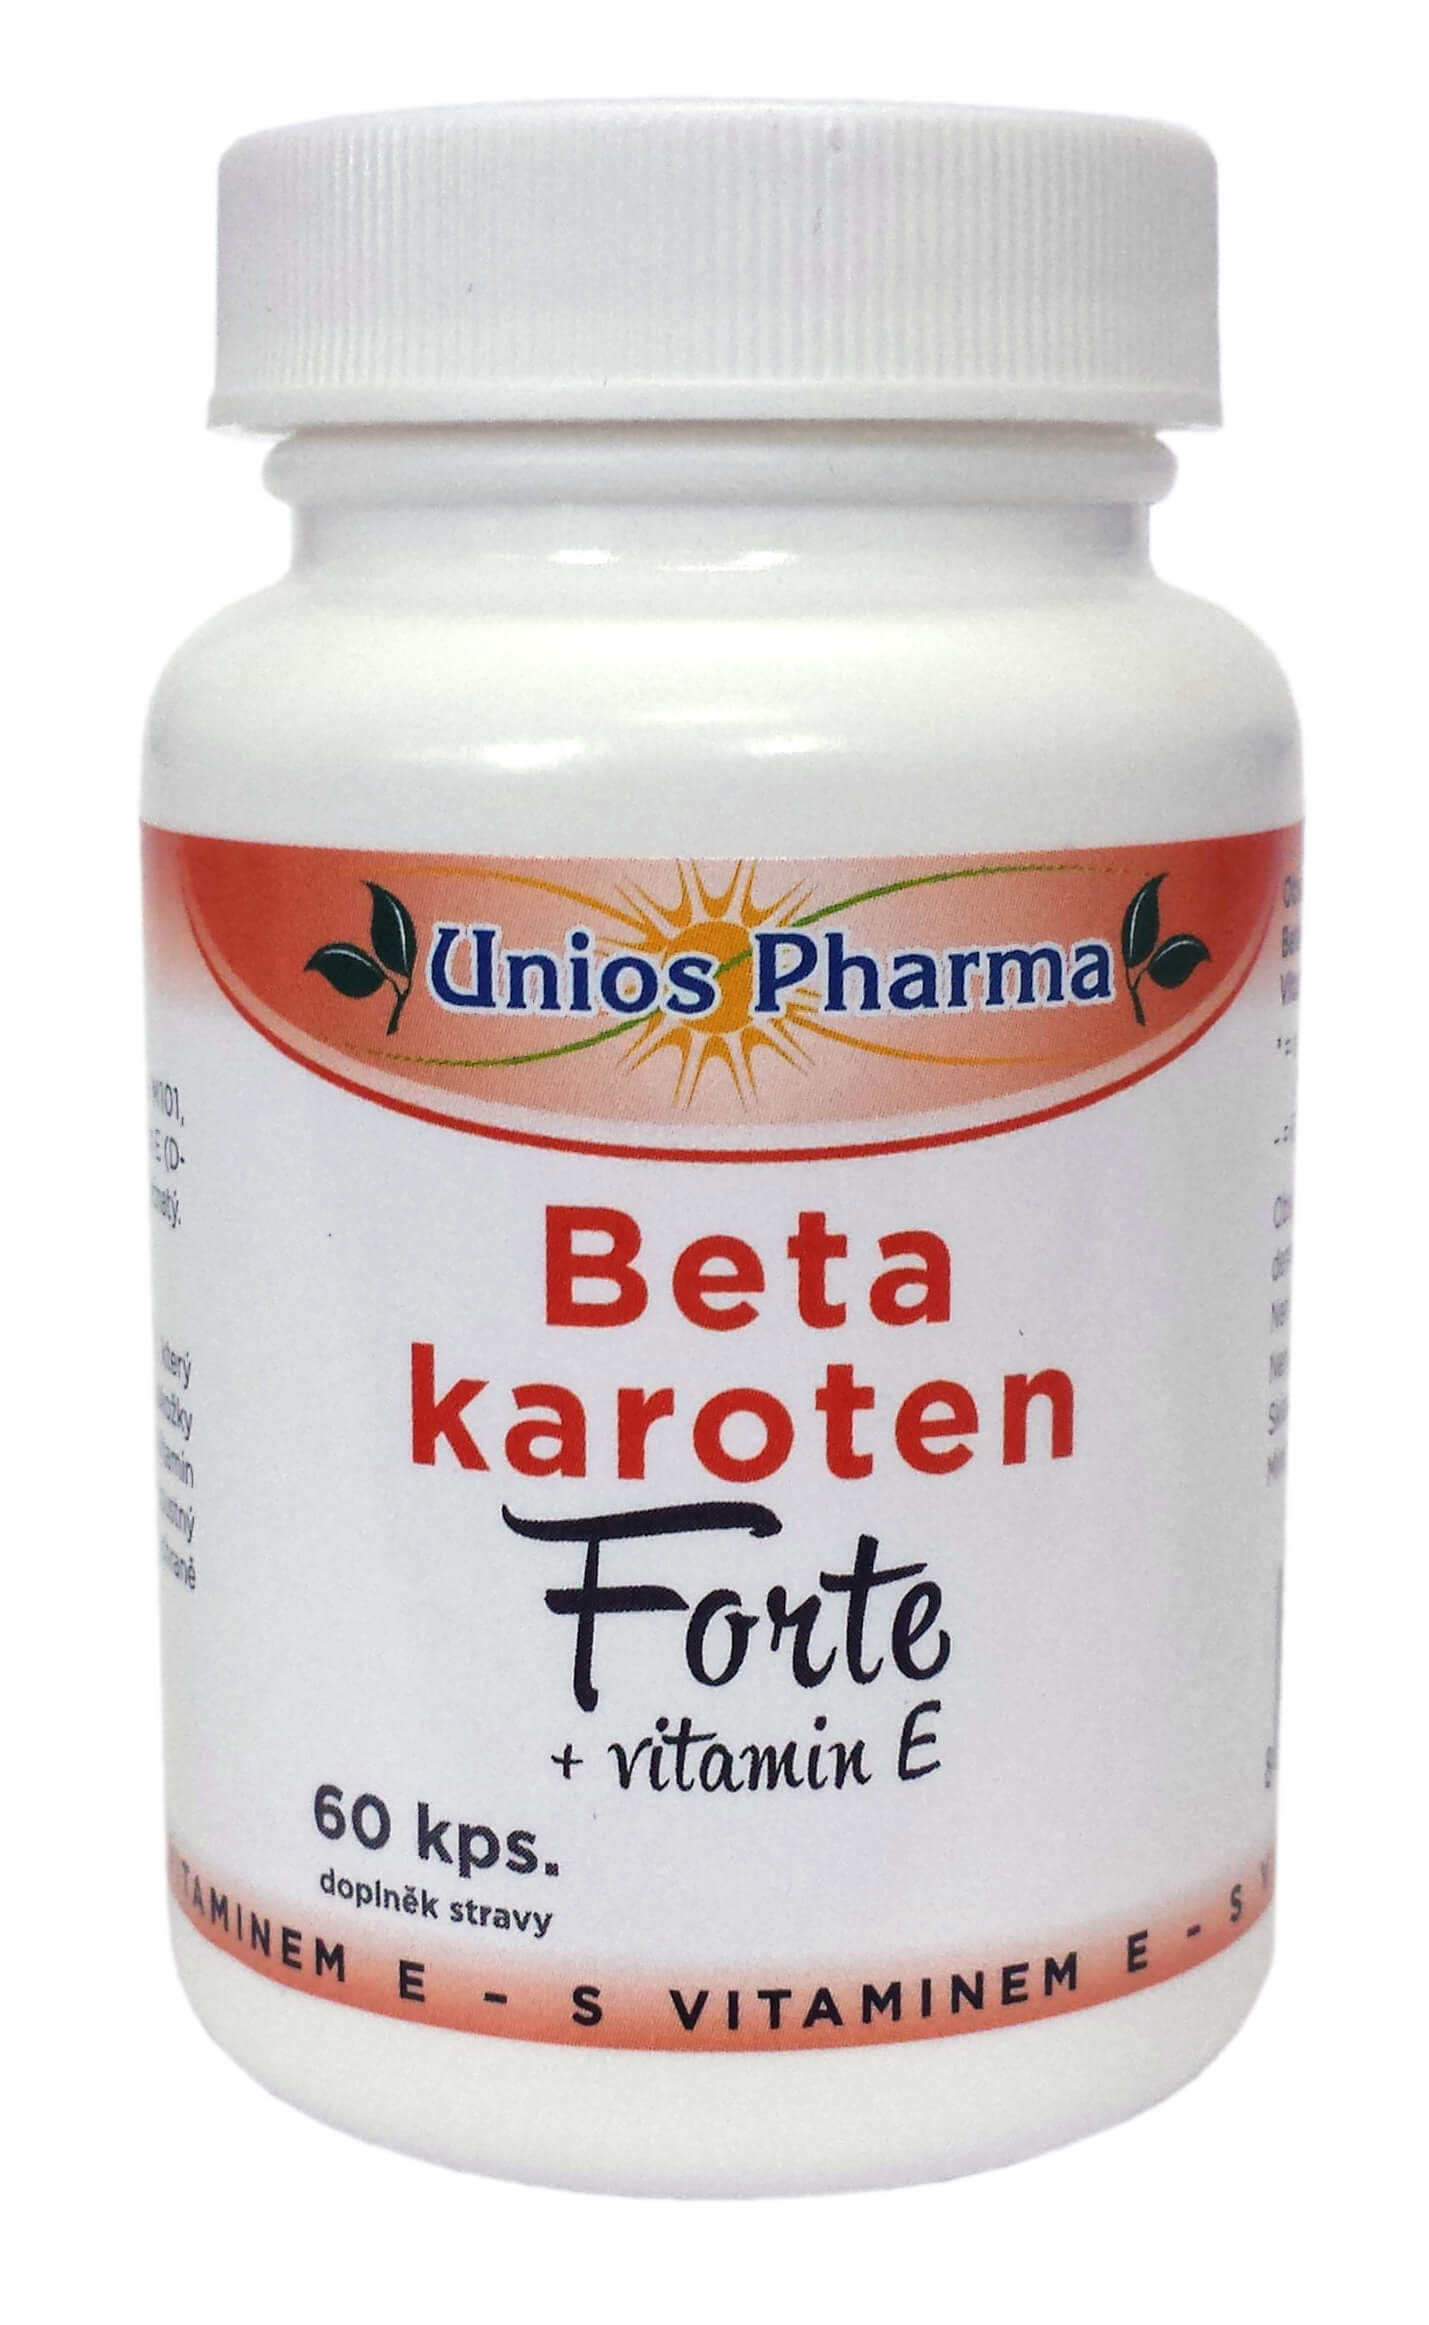 Zobrazit detail výrobku Unios Pharma Beta karoten FORTE + vitamin E 60 kapslí + 2 měsíce na vrácení zboží